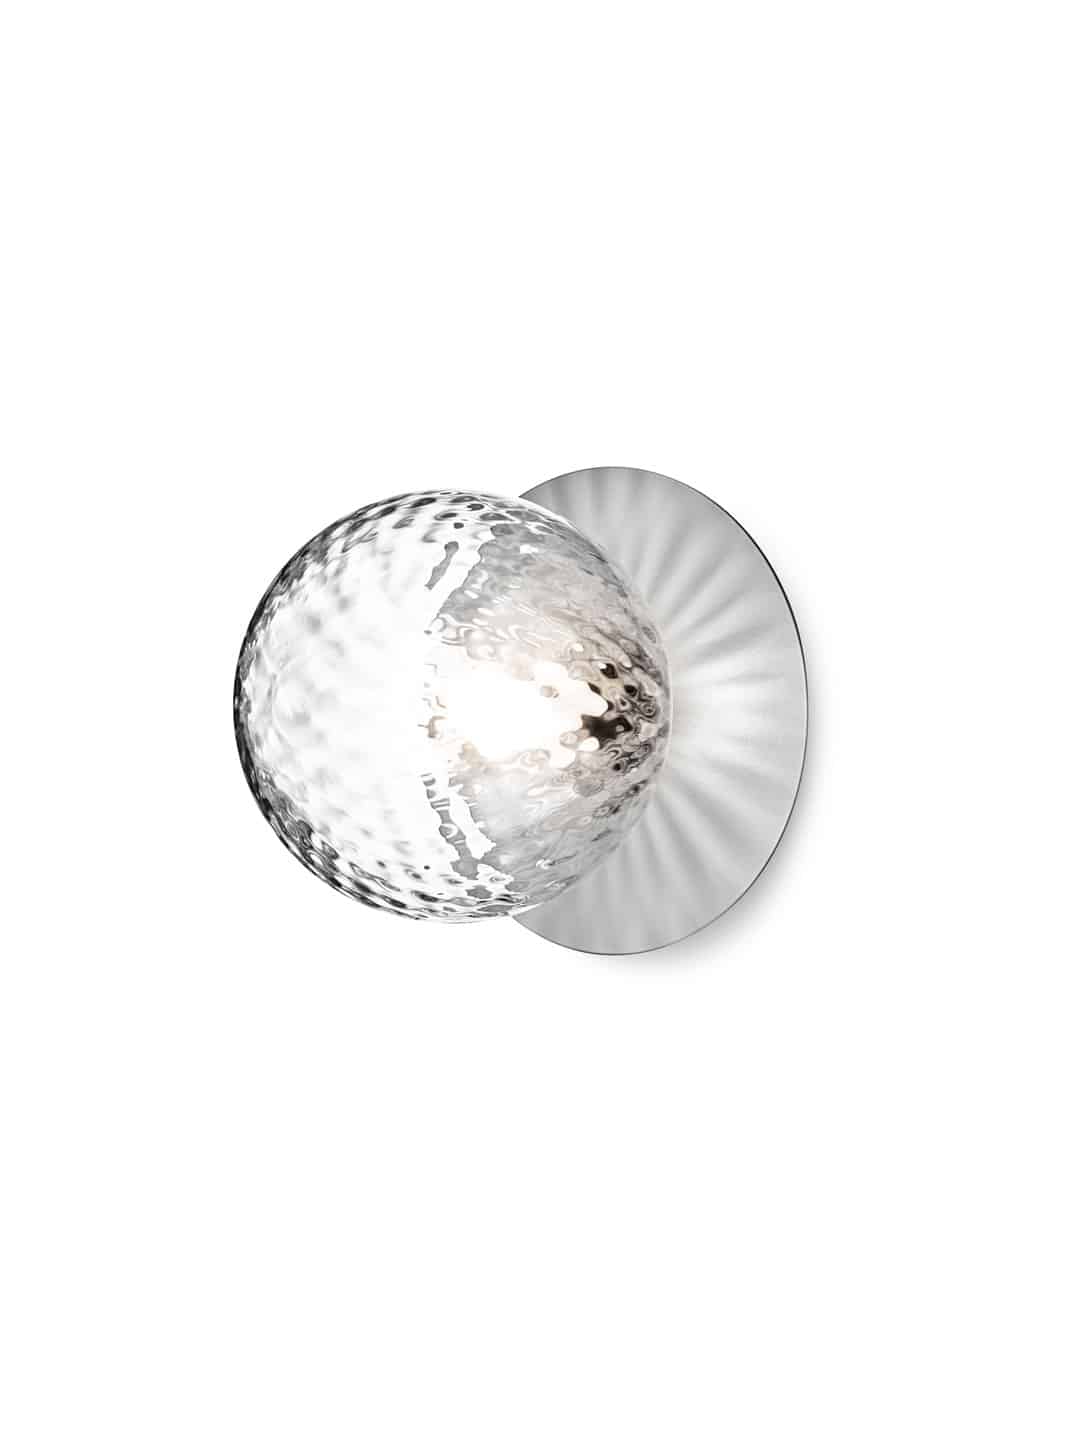 Скандинавский настенный светильник Nuura Liila 1 Medium чистый кристалл и серебро вид сбоку